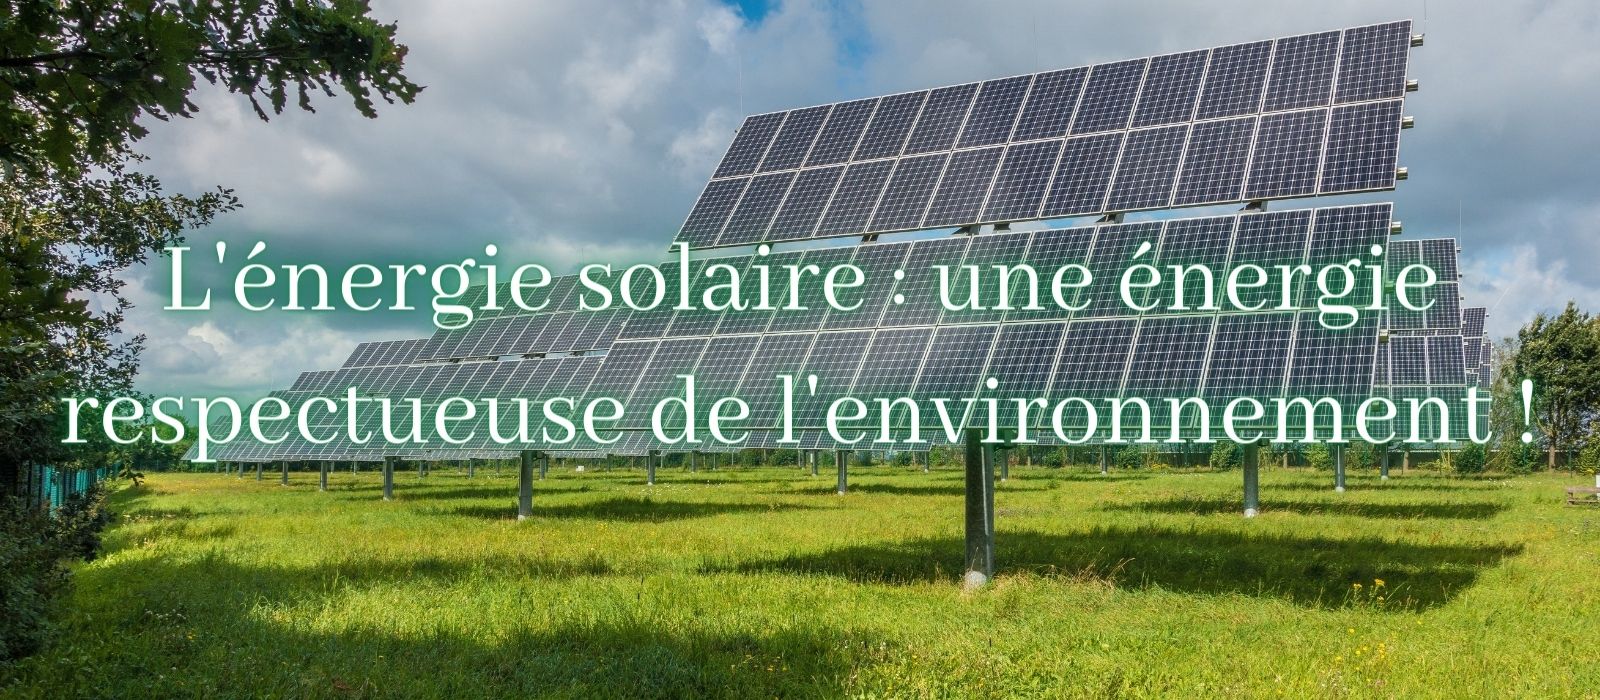 energie-solaire-respectueuse-de-lenvironnement-lampe-solar